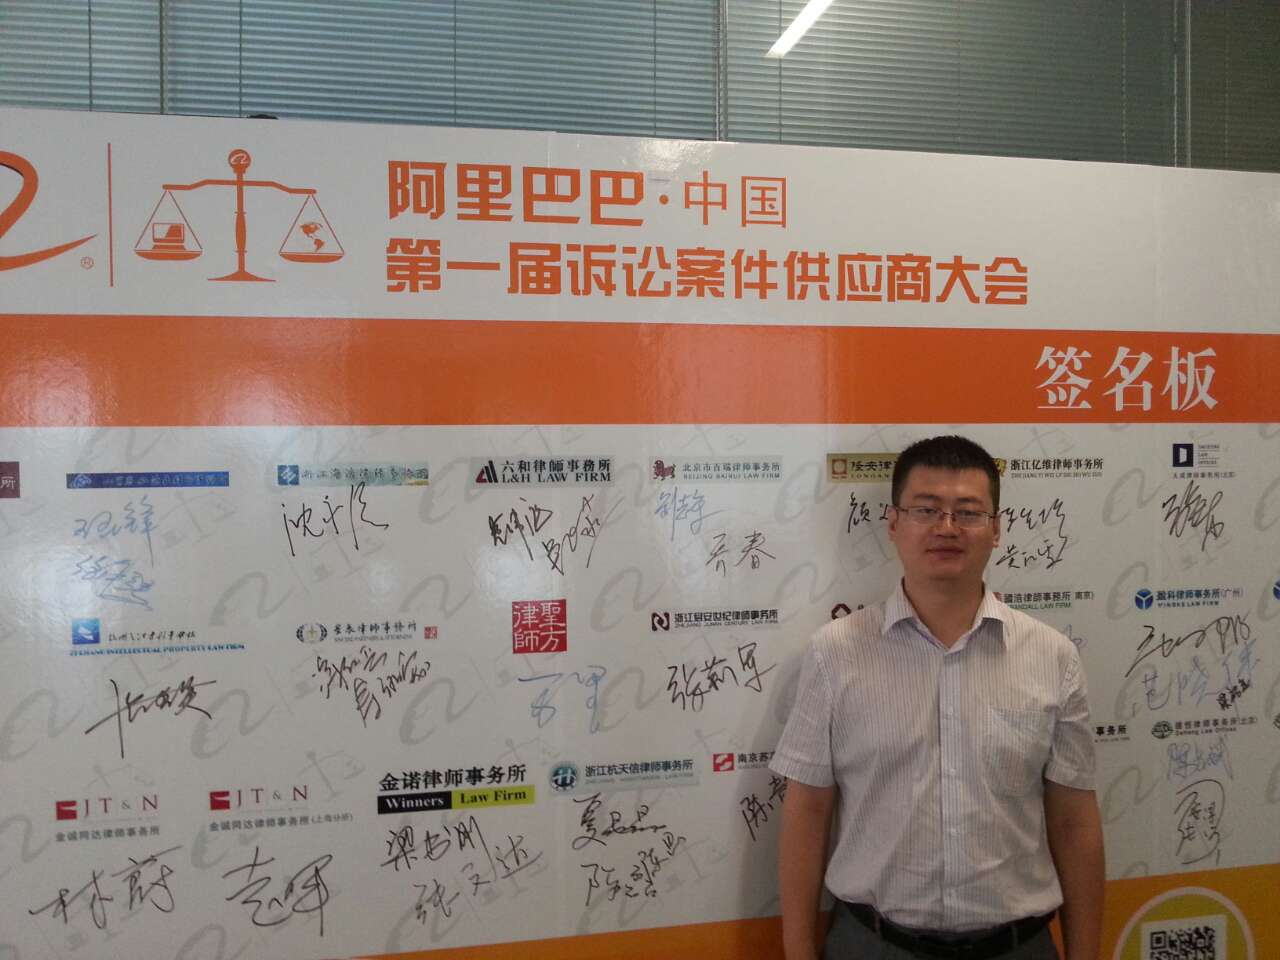 刘志军、乔春律师应邀出席阿里巴巴第一届诉讼案件供应商大会